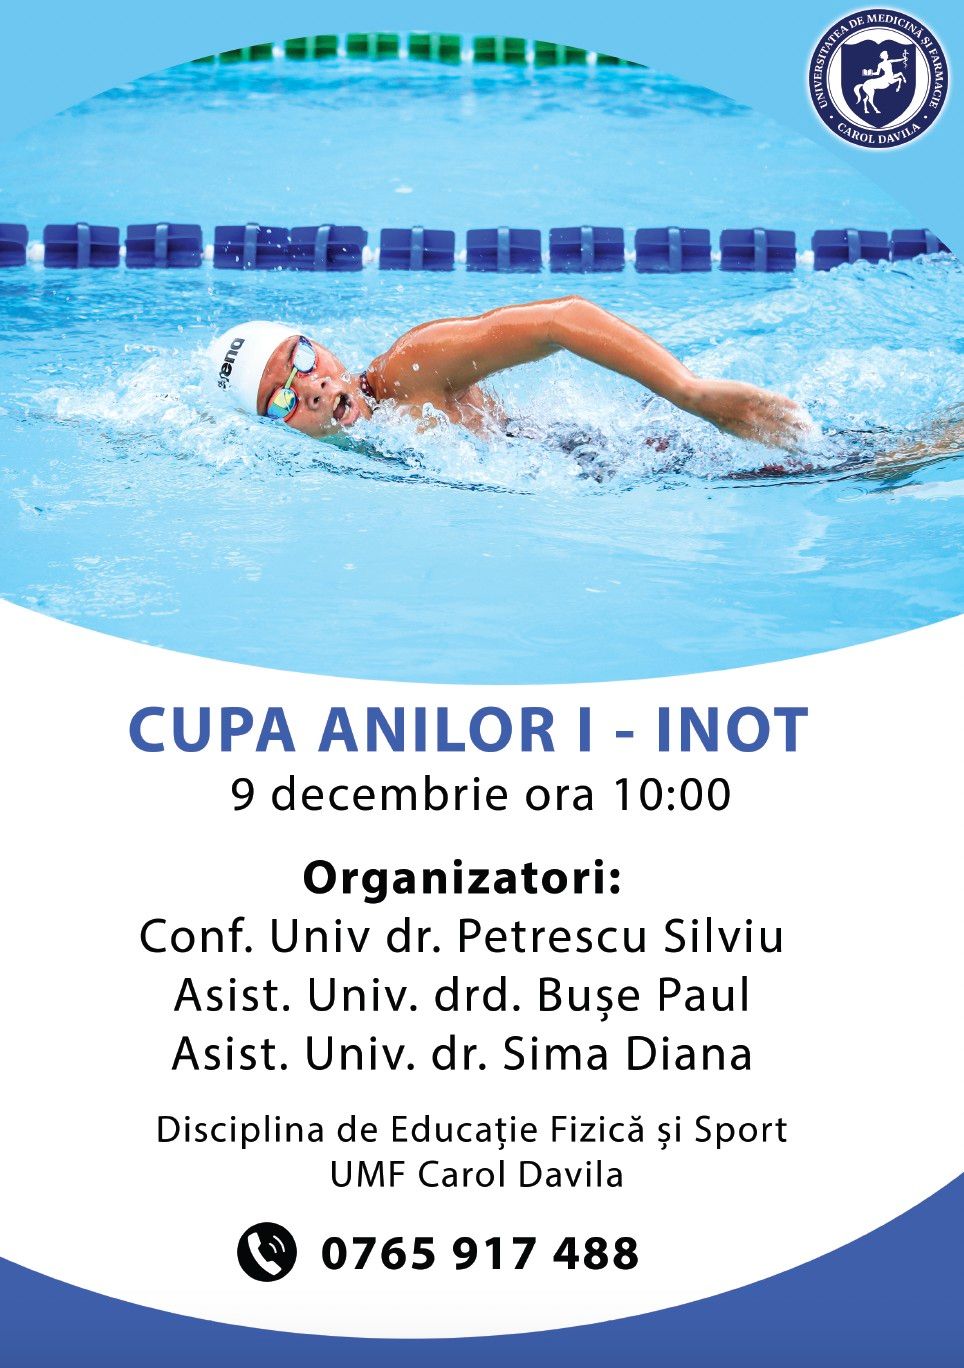 Competiție de înot pentru studenții mediciniști, în decembrie